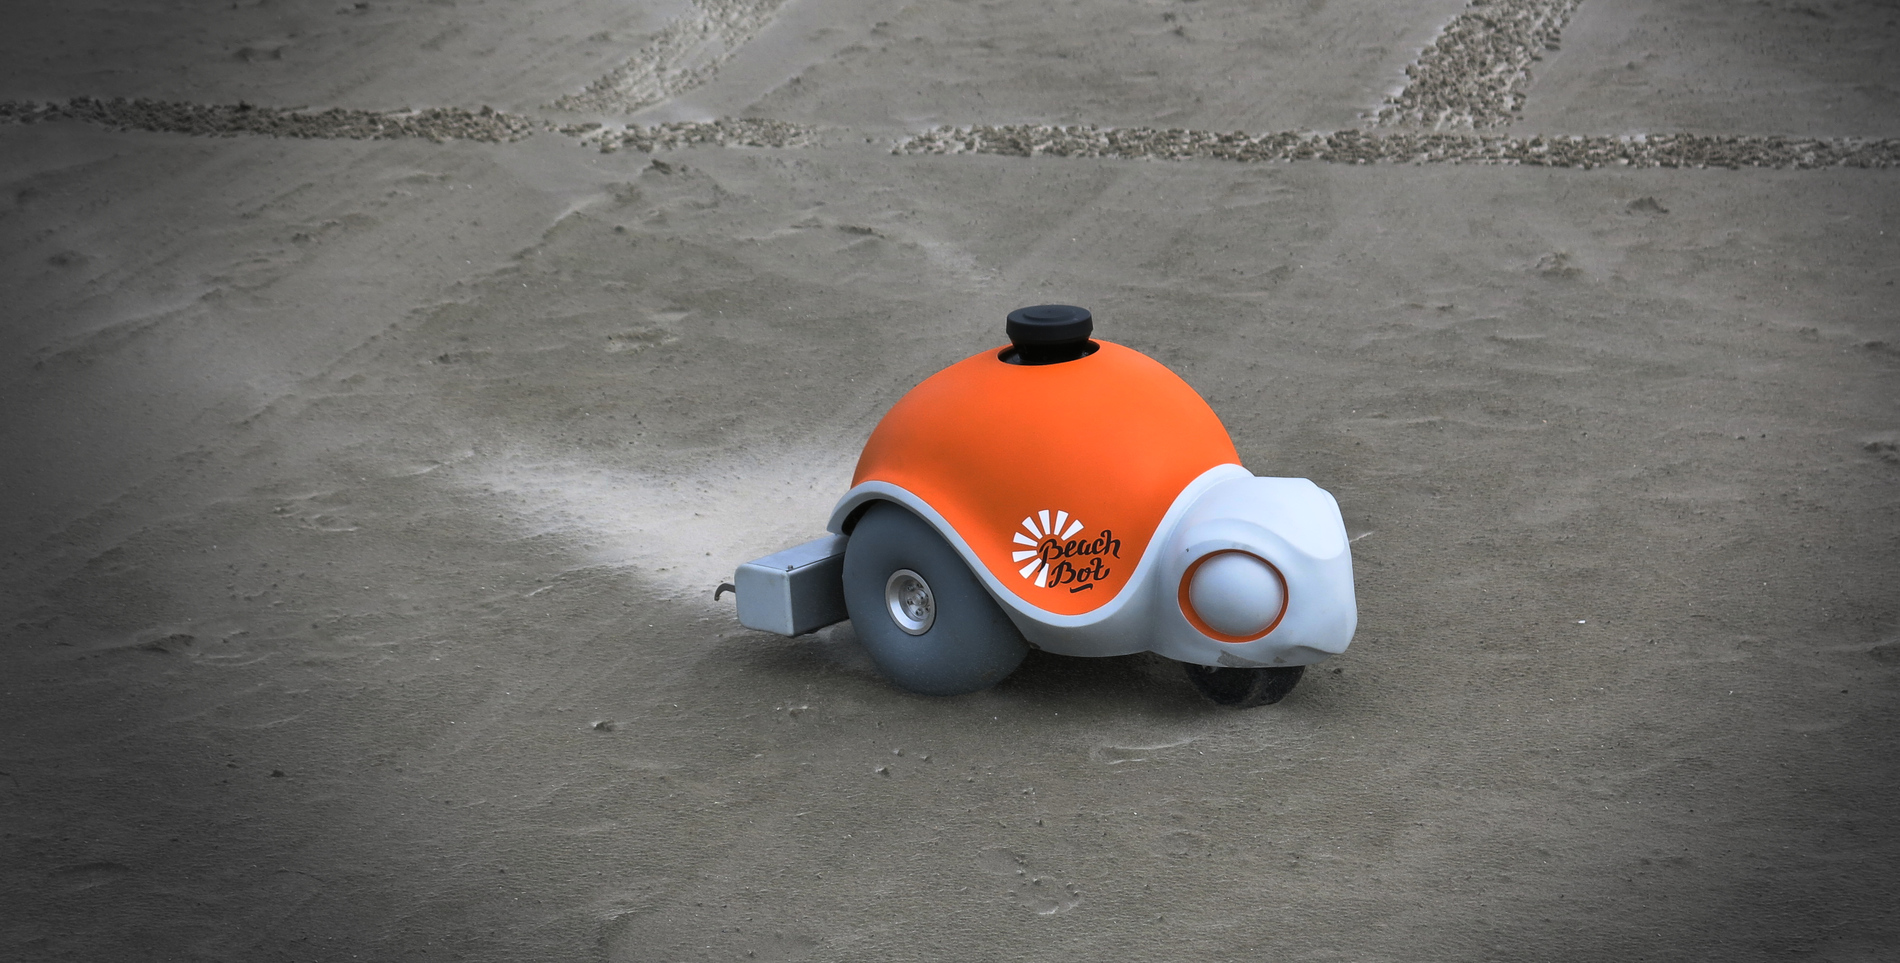 Beach-Bot